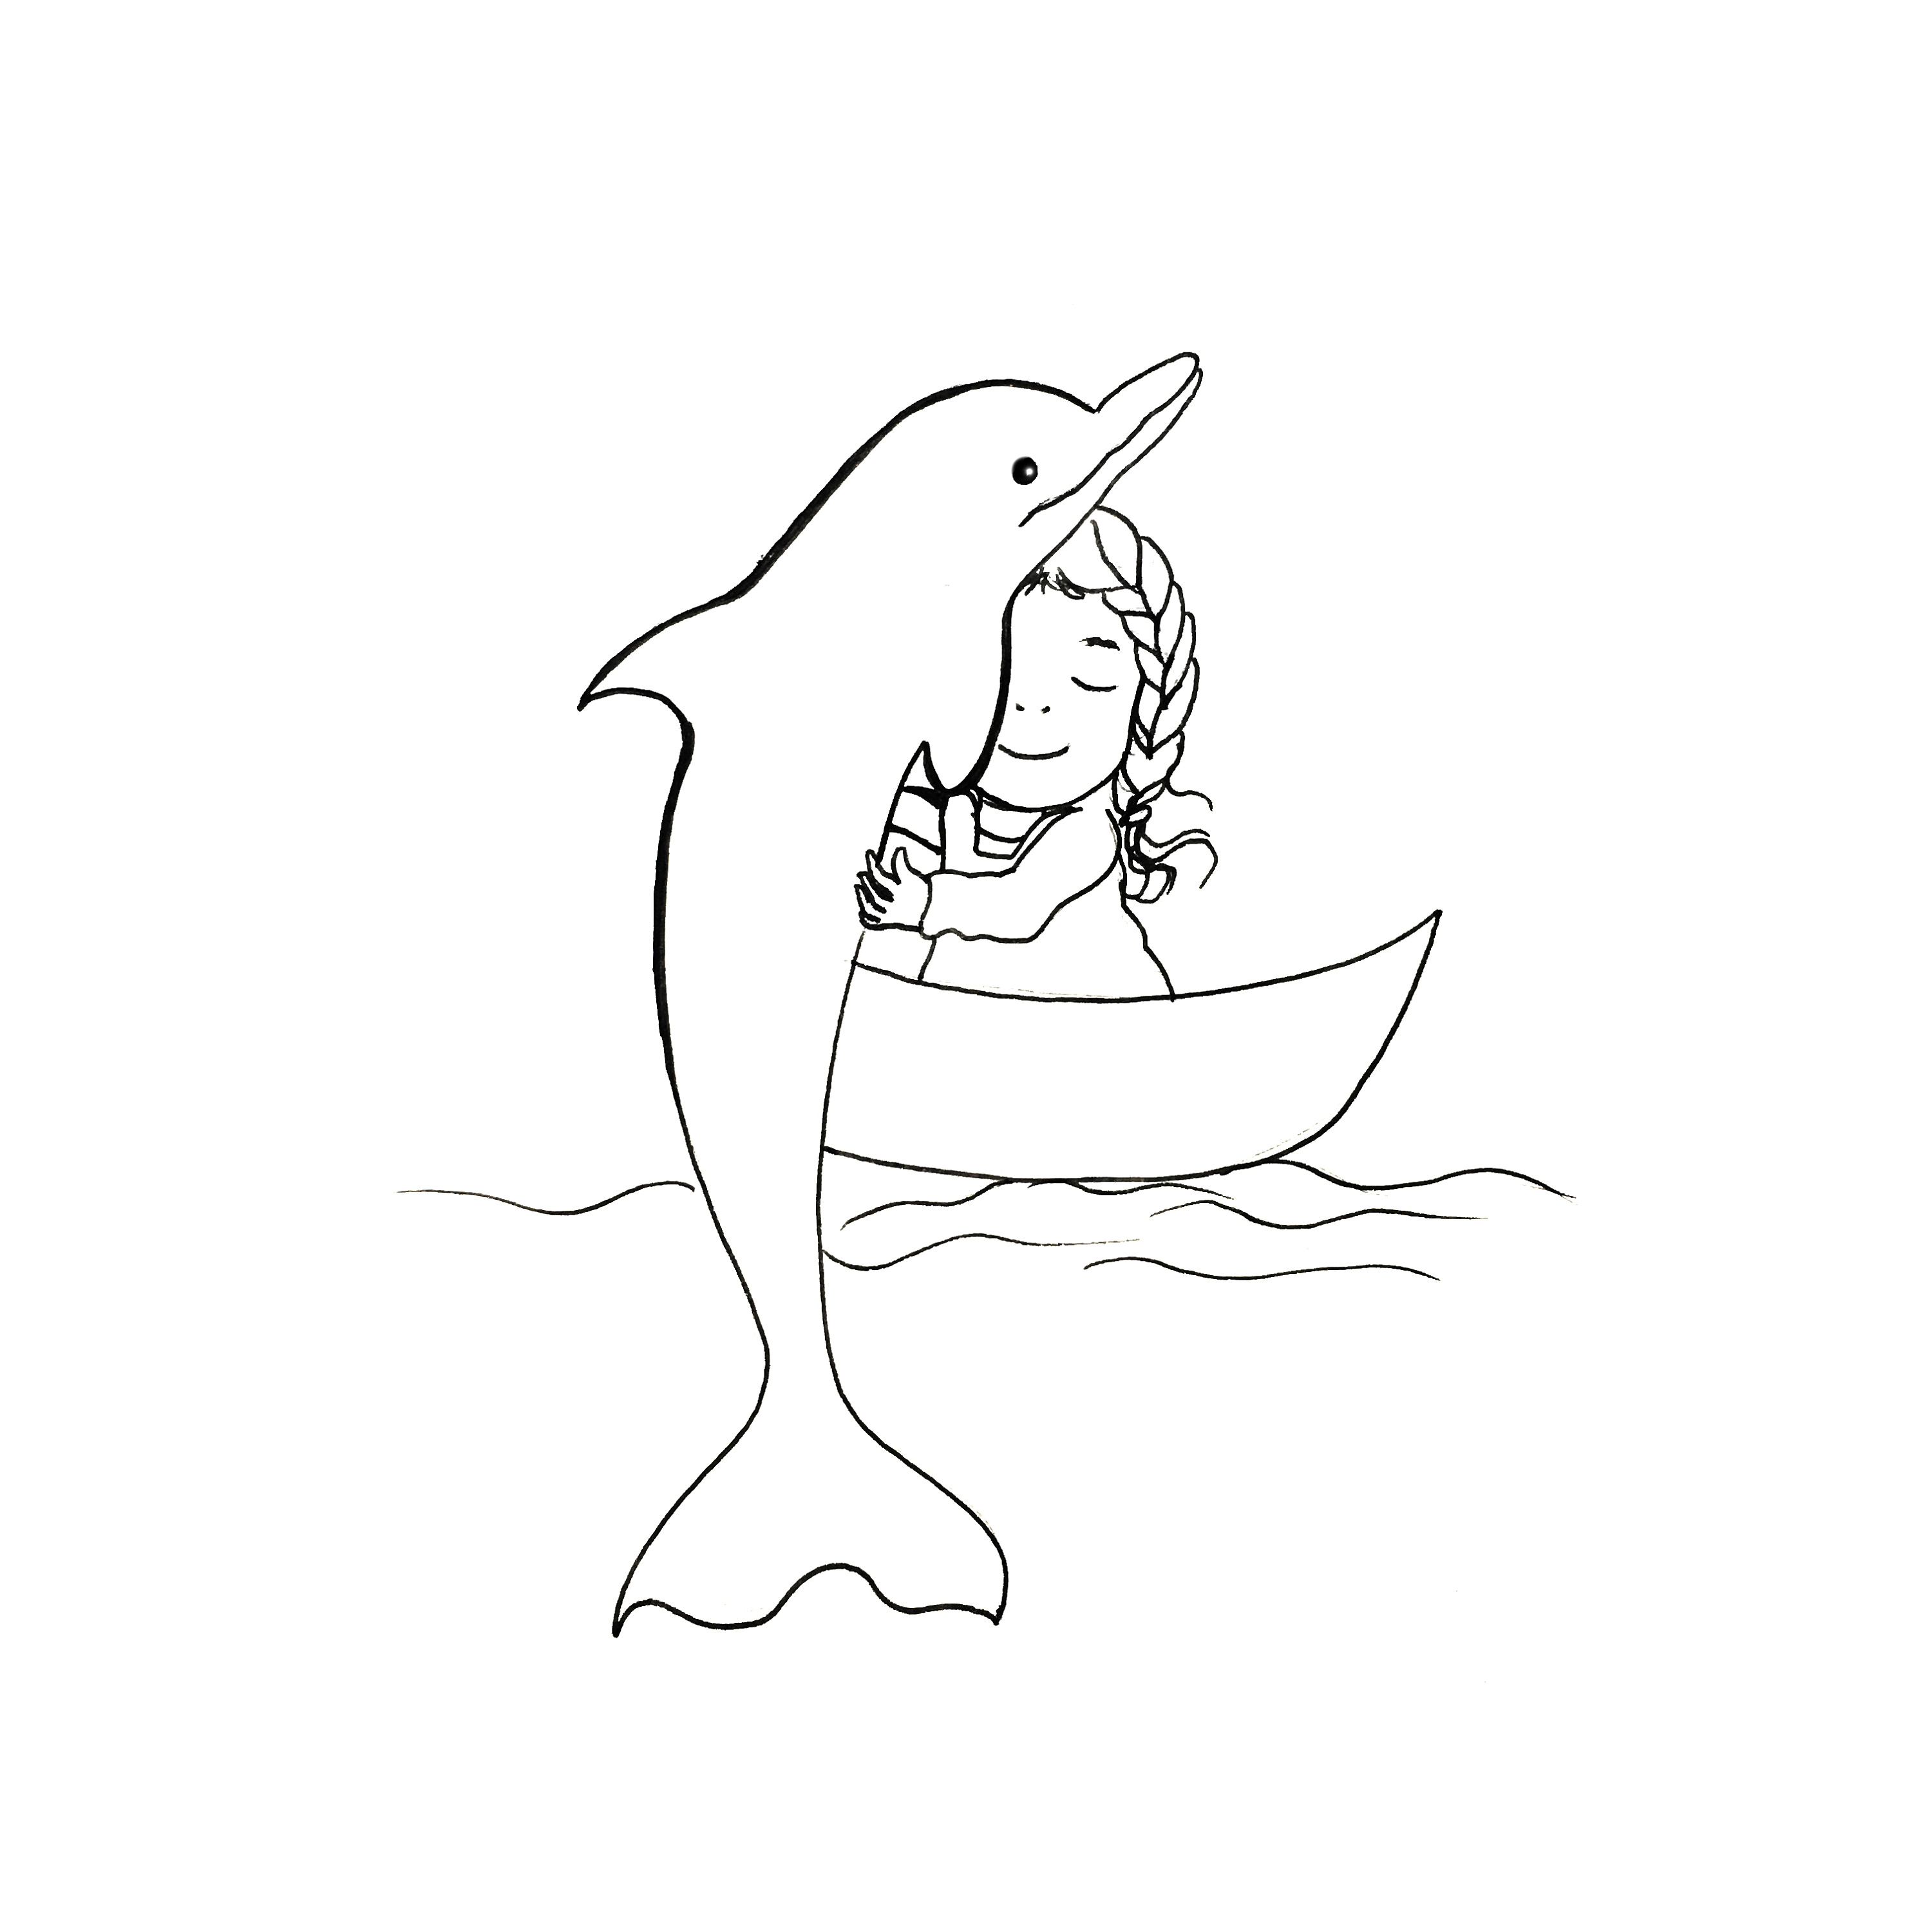 海豚儿童画 - 全部作品 - 素材集市